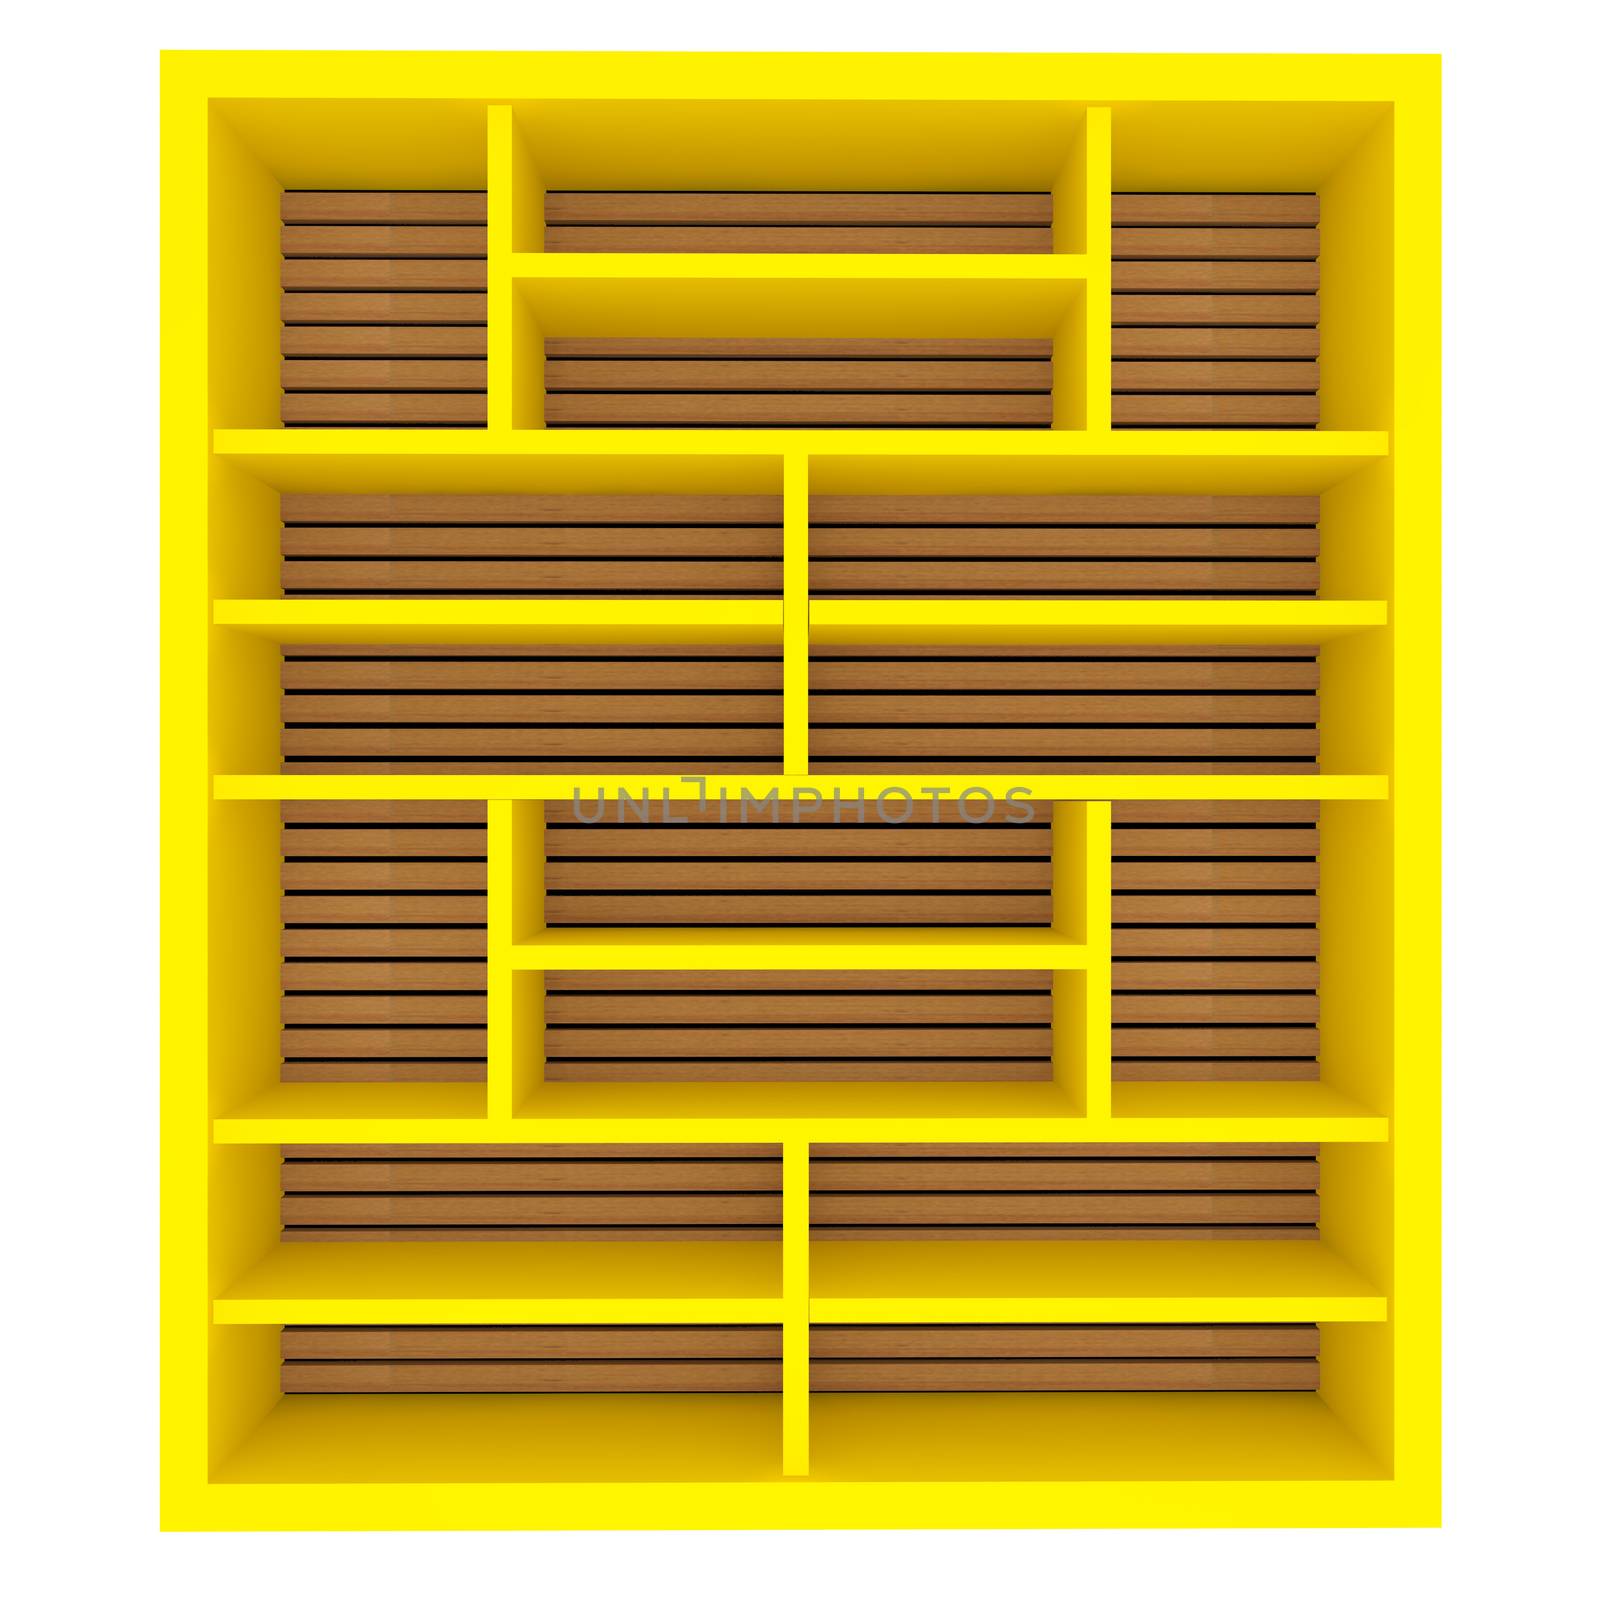 Empty yellow shelves by sumetho